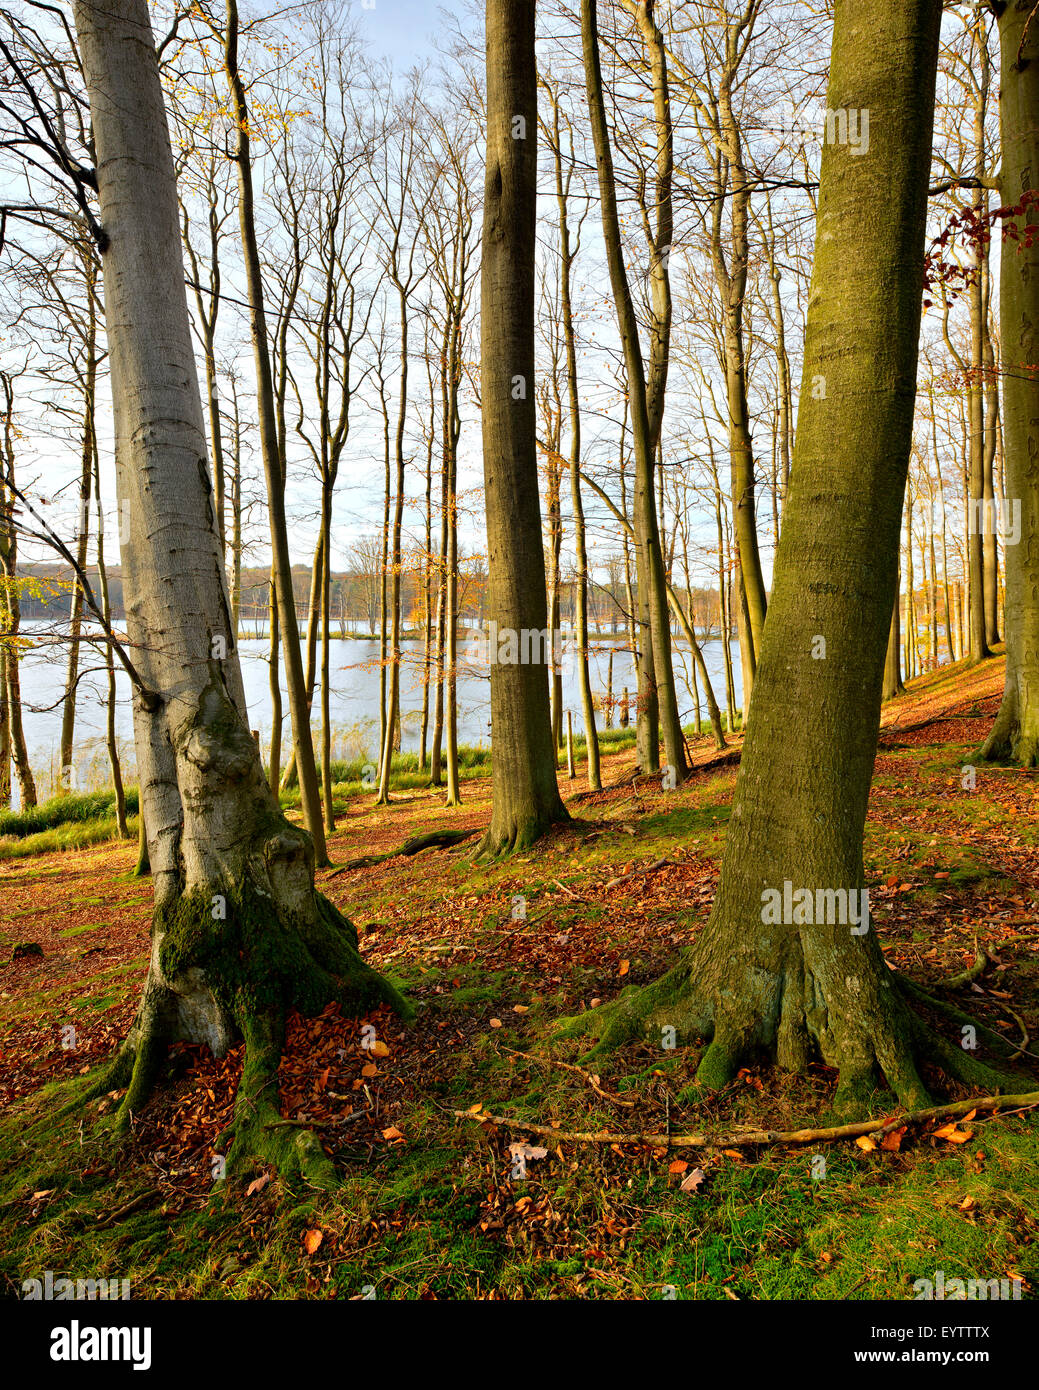 Germany, Mecklenburg-Western Pomerania, Mecklenburg-Vorpommern, Müritz National Park, branch Serrahn, autumn in the Schweingartensee (lake) Stock Photo